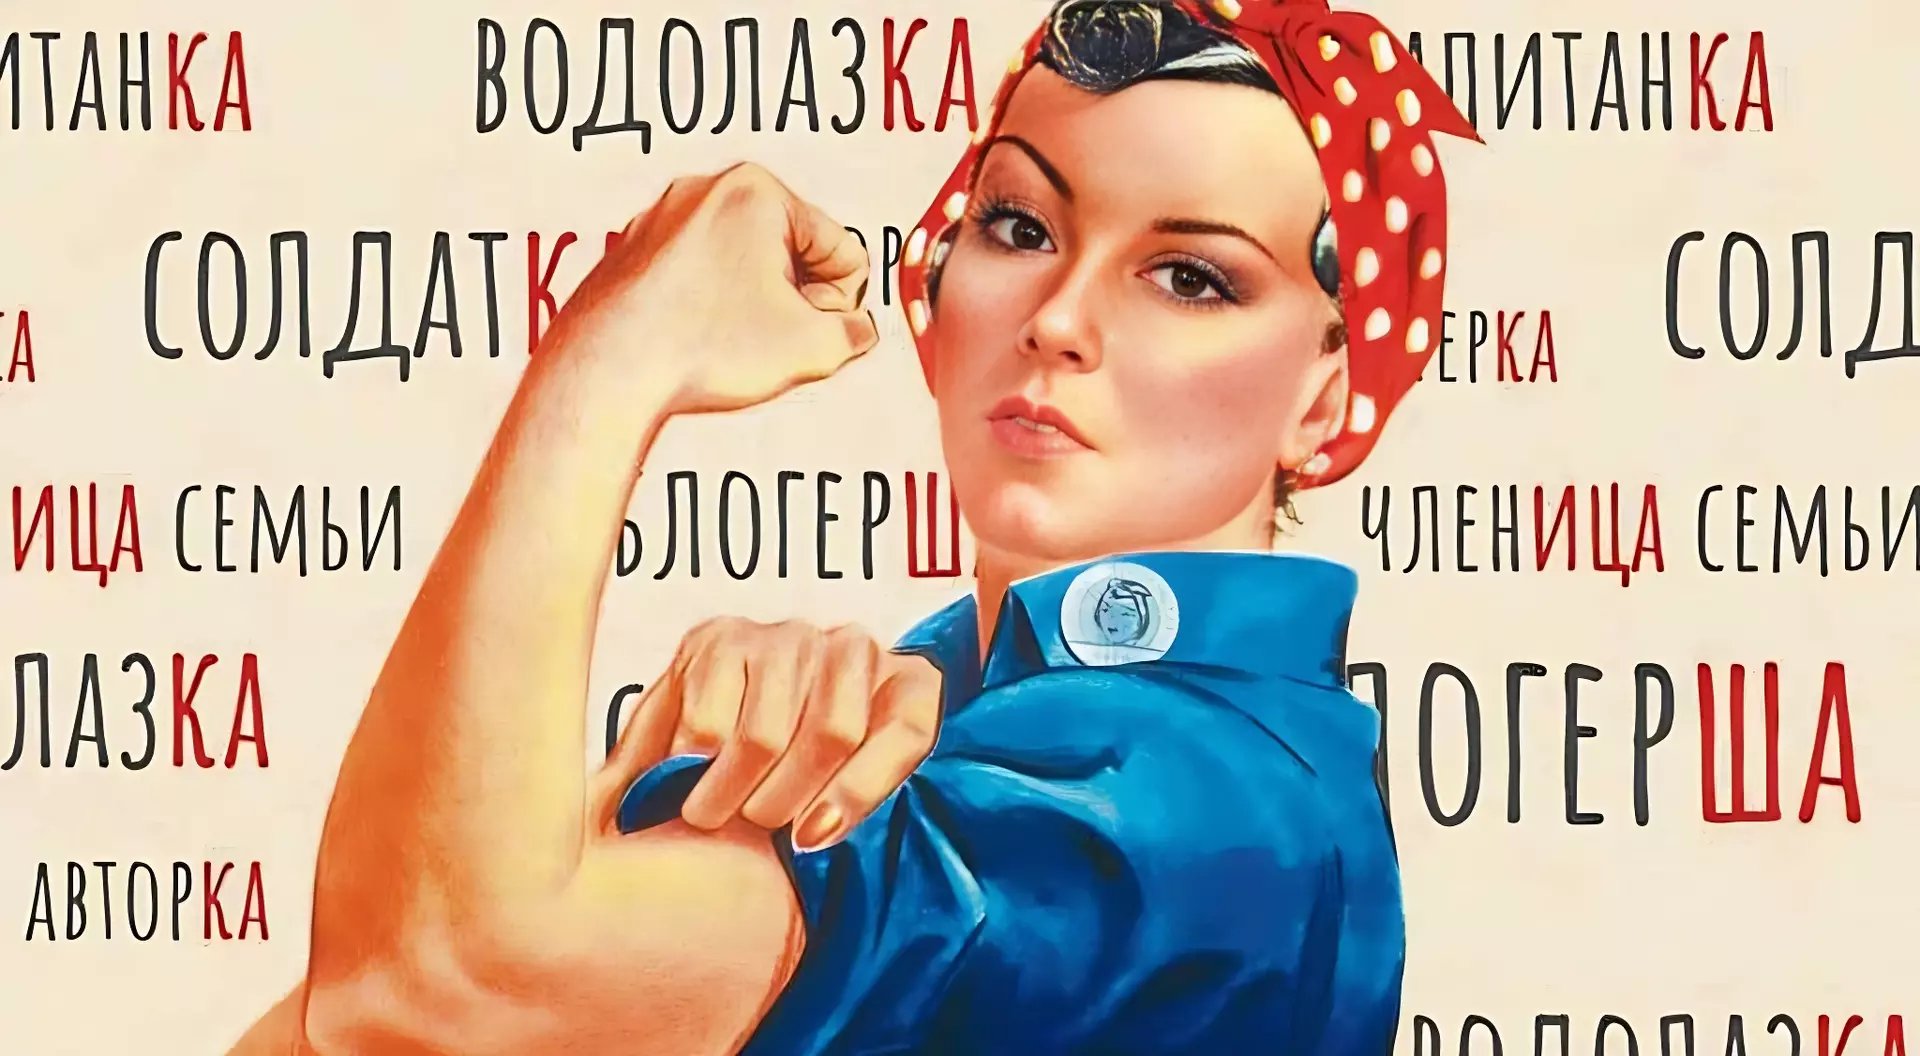 Феминитивы. Феминитивы картинки. Феминитивы на советских плакатах. Феминитивы примеры. Использовать феминитивы